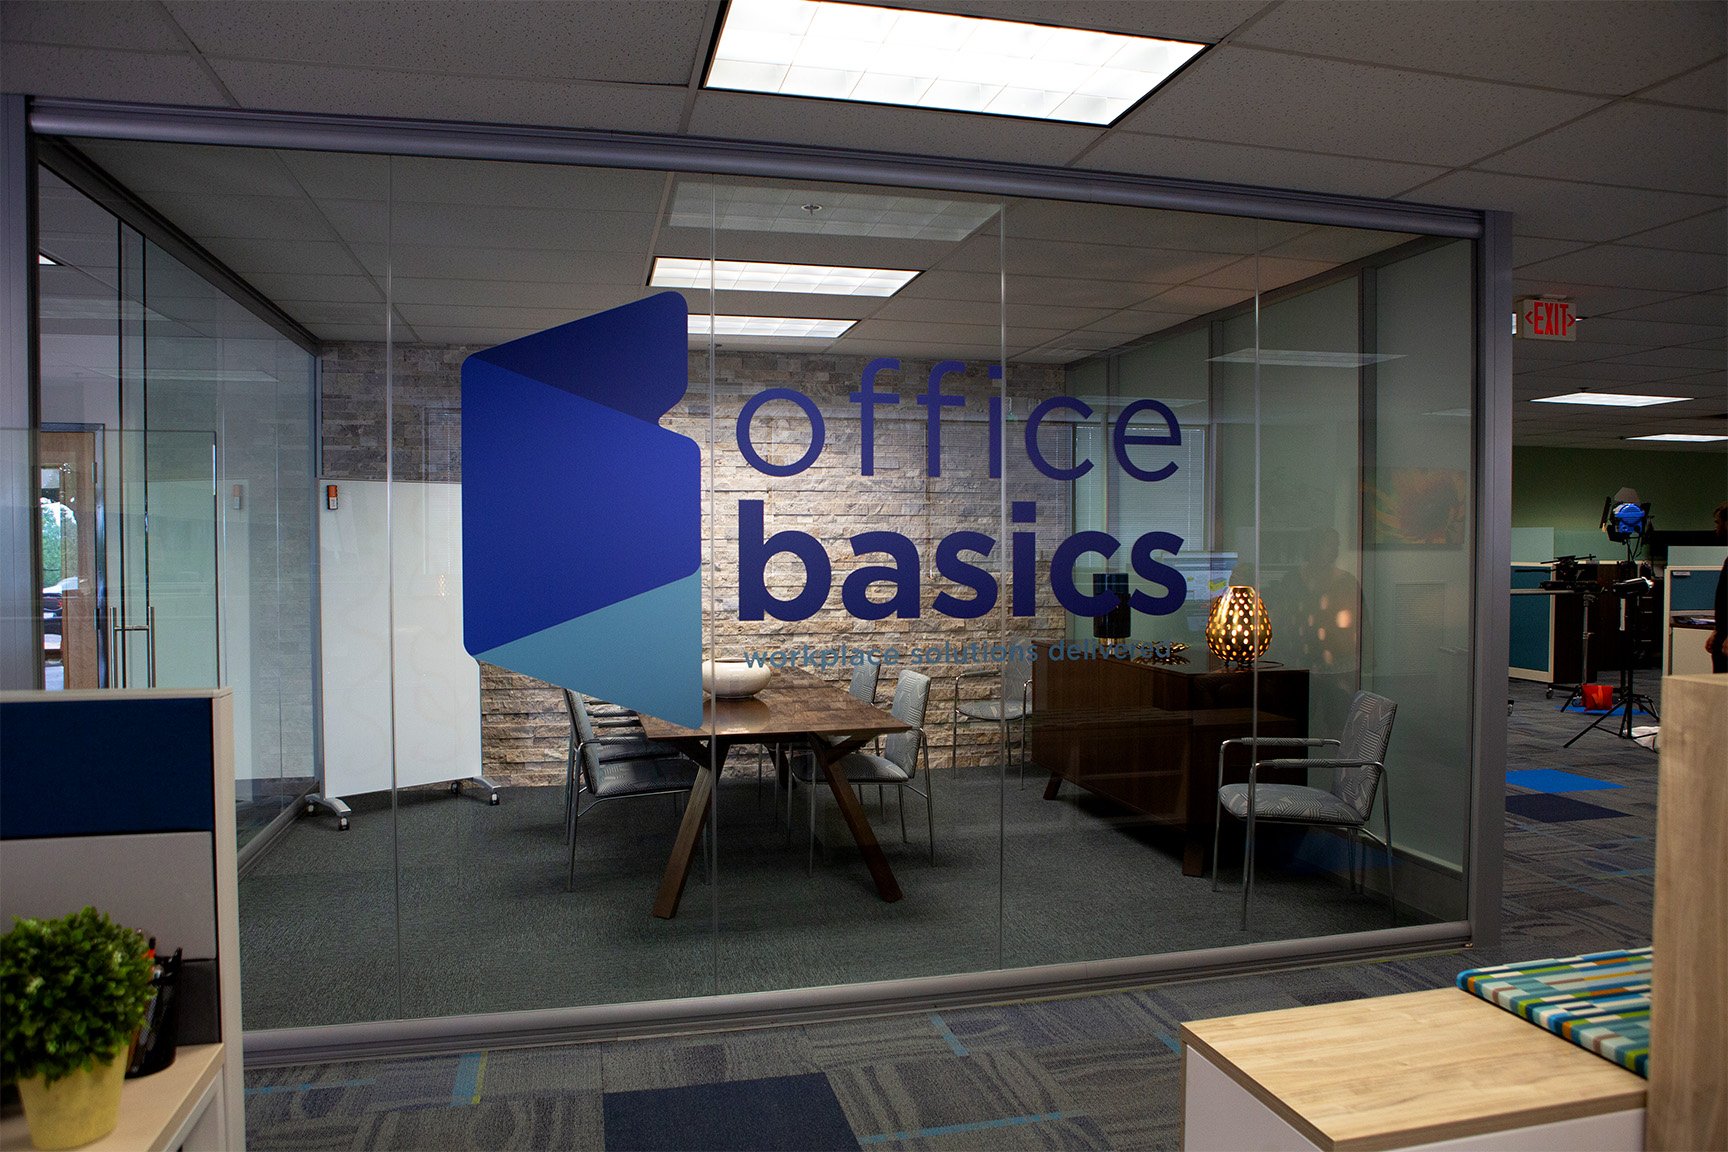 https://www.officebasics.com/hubfs/images/homepage-static-banner.jpg